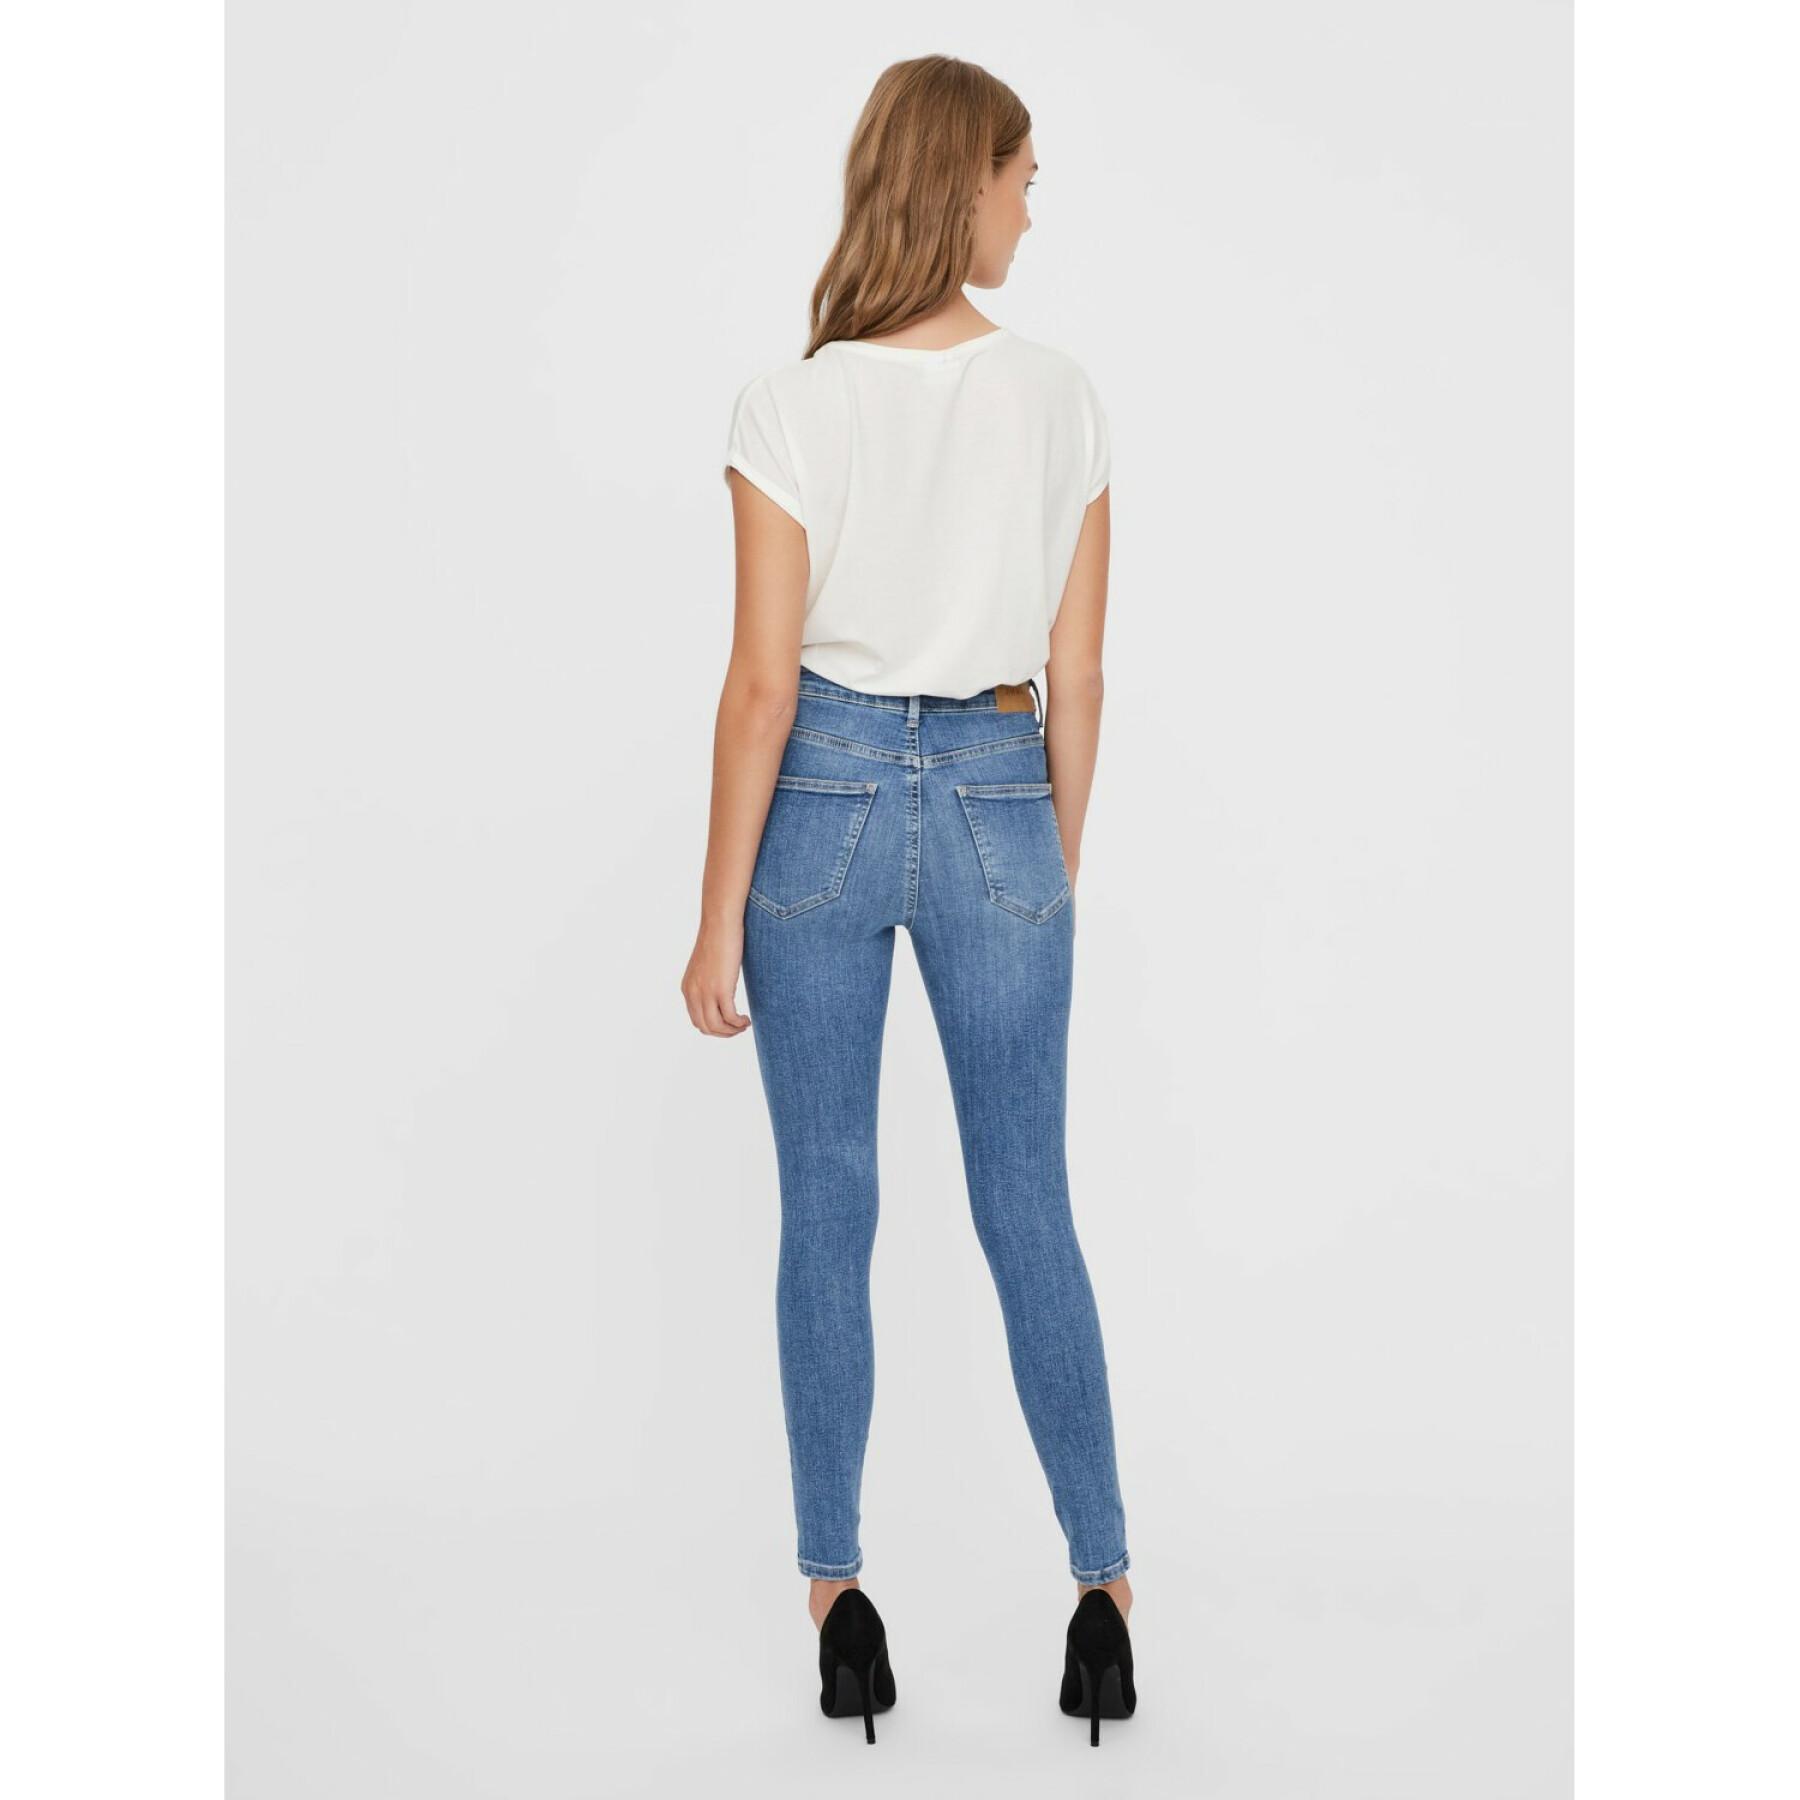 Damen-Skinny-Jeans Vero Moda vmsophia 3142